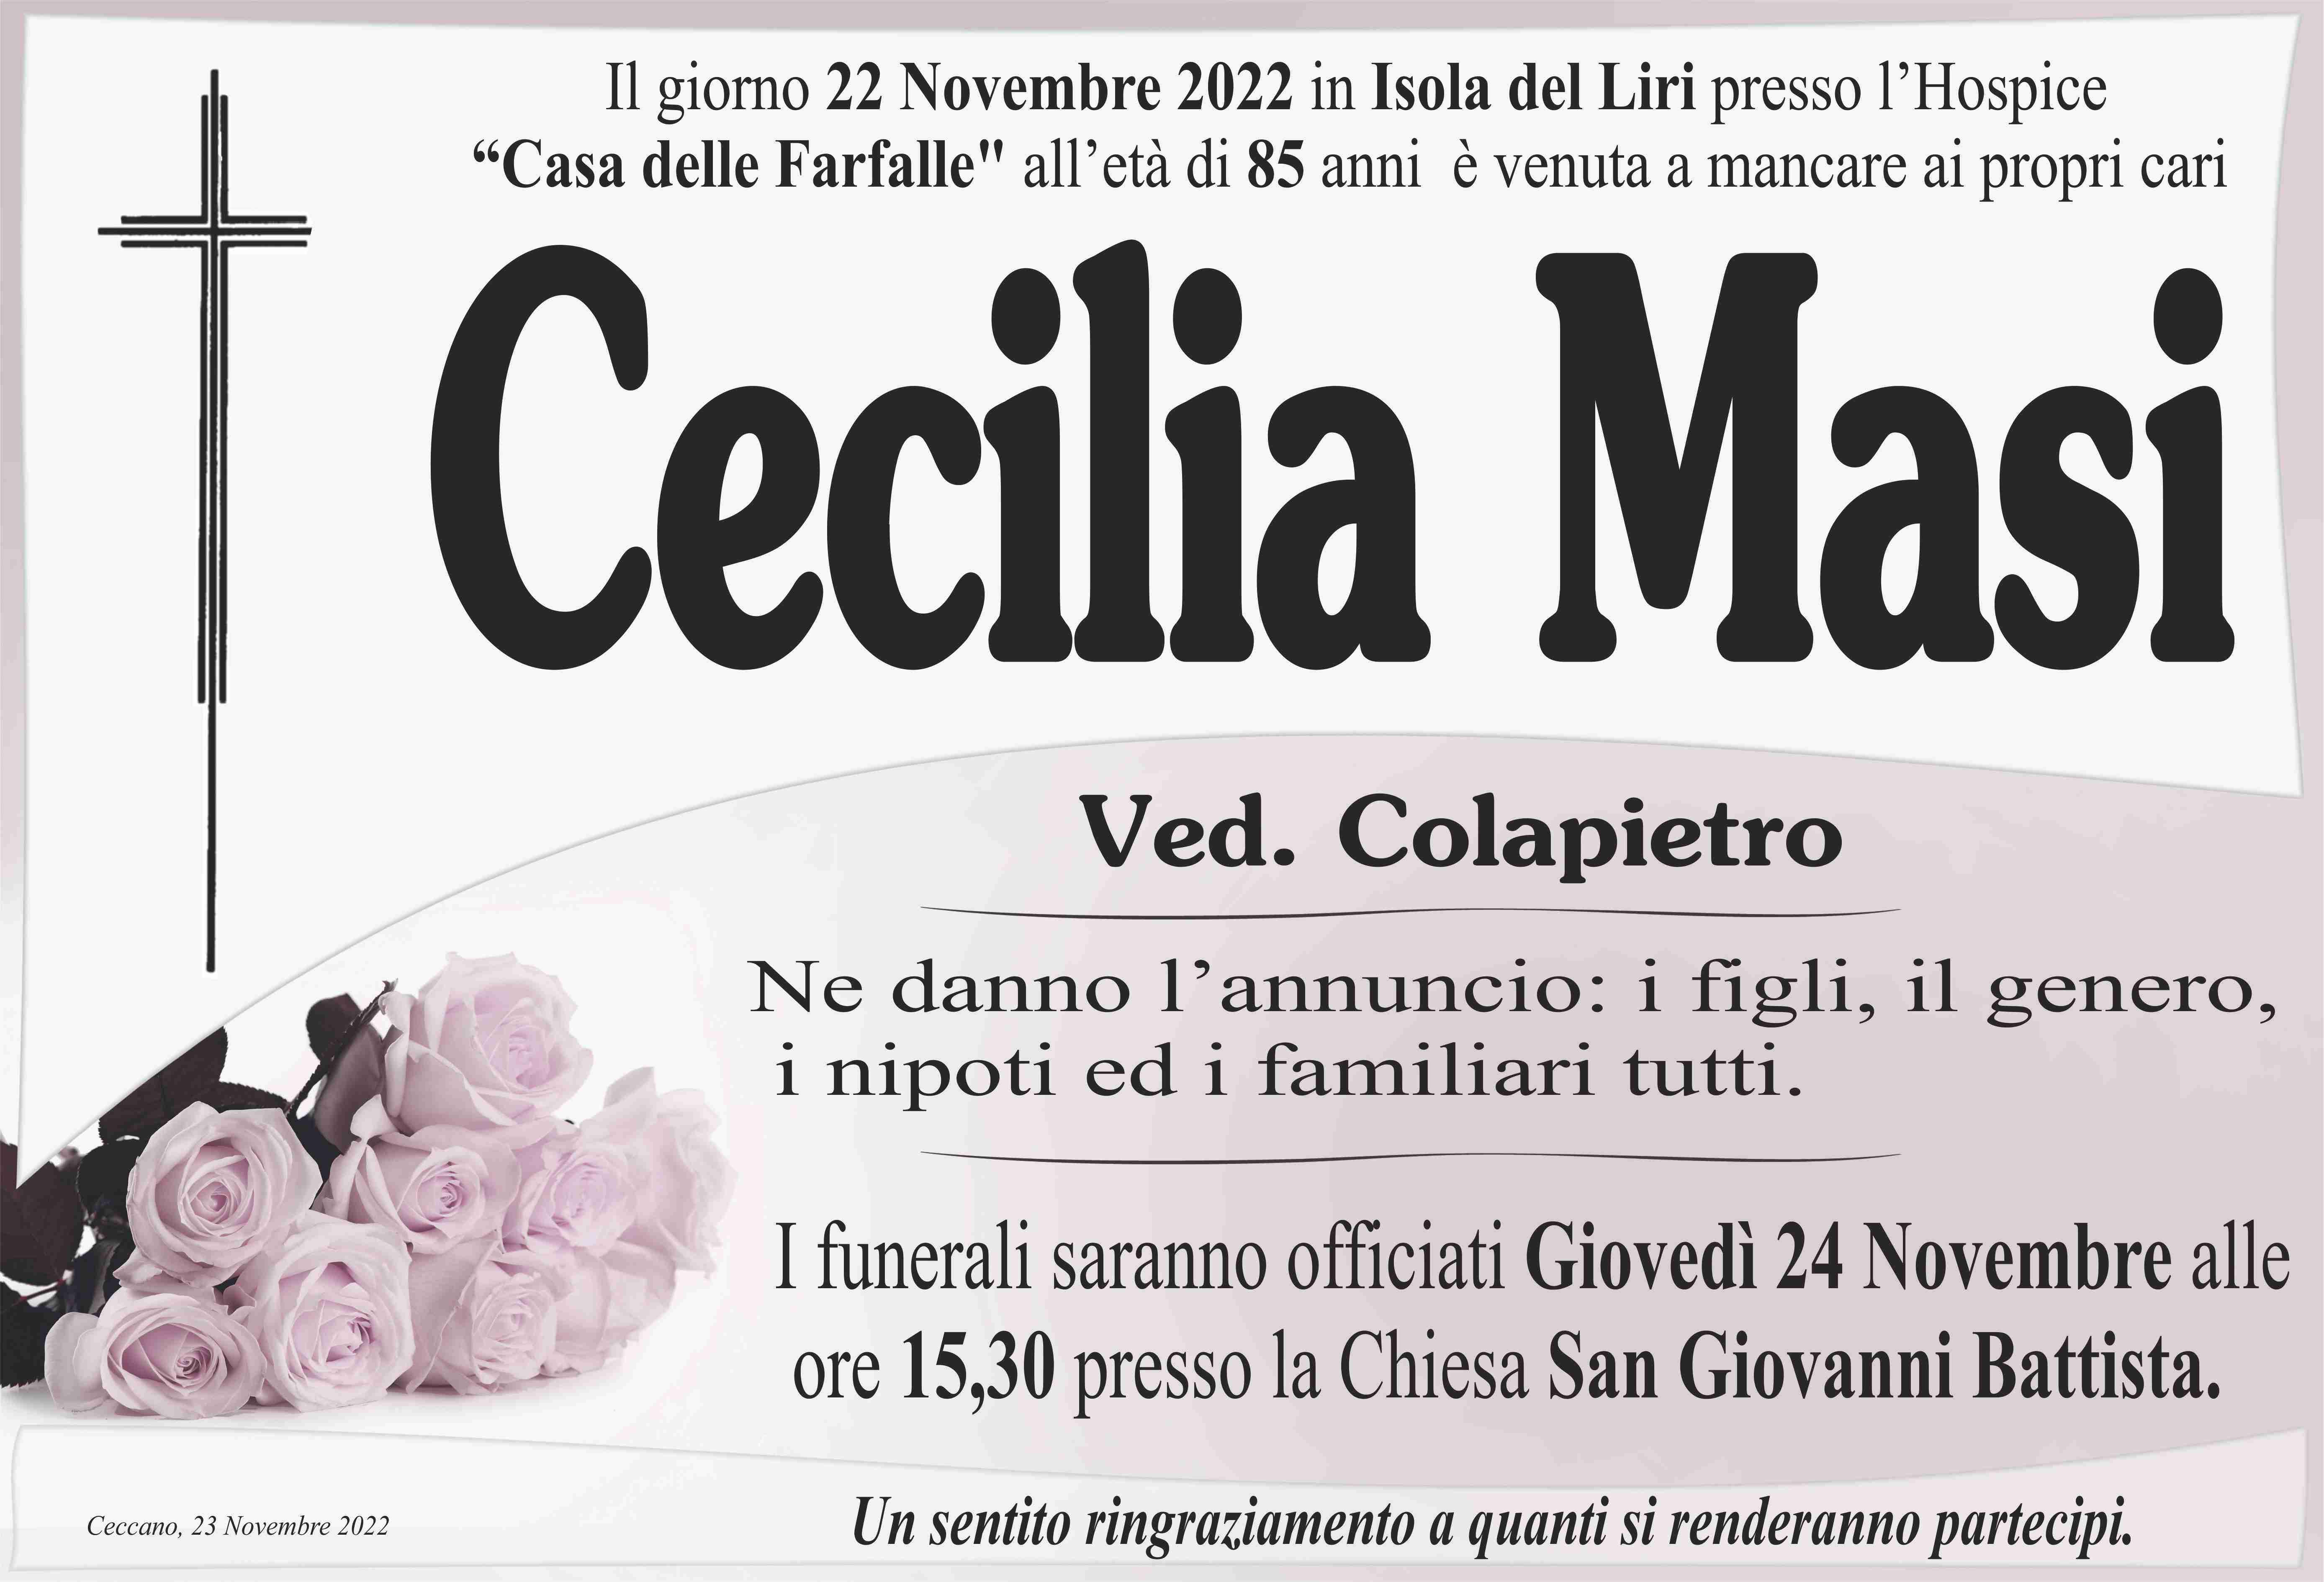 Cecilia Masi